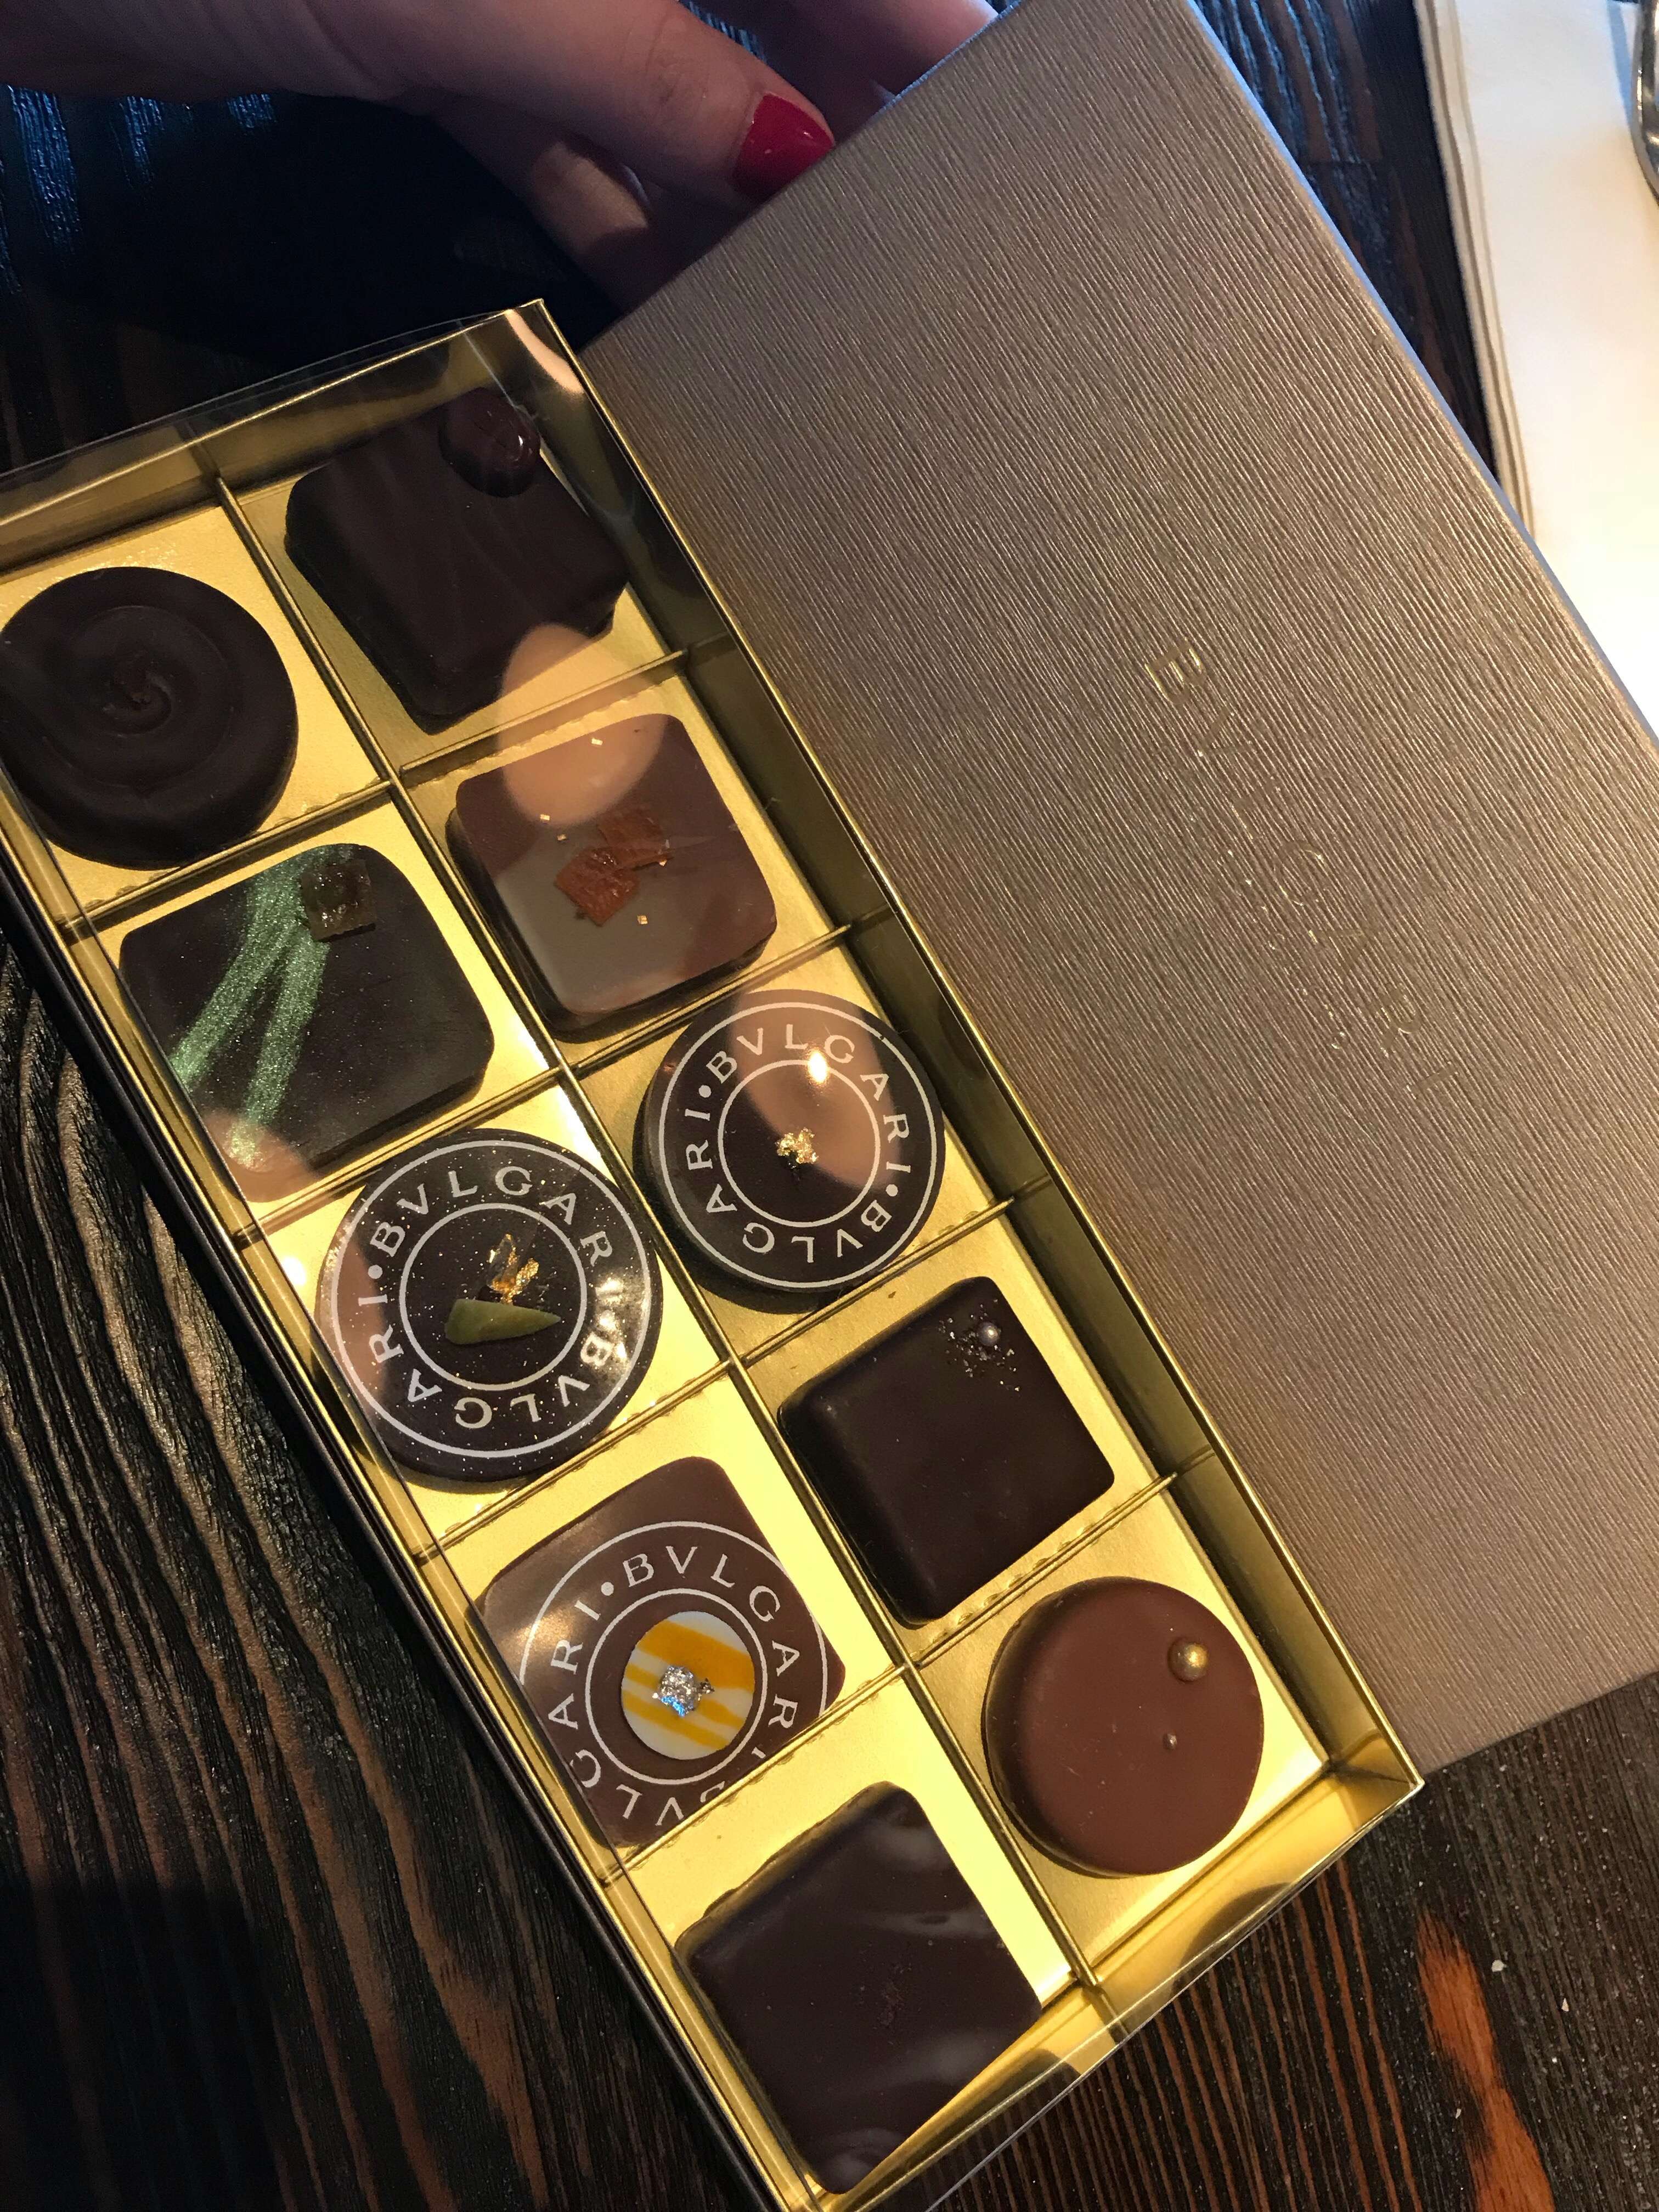 bvlgari chocolate dubai price